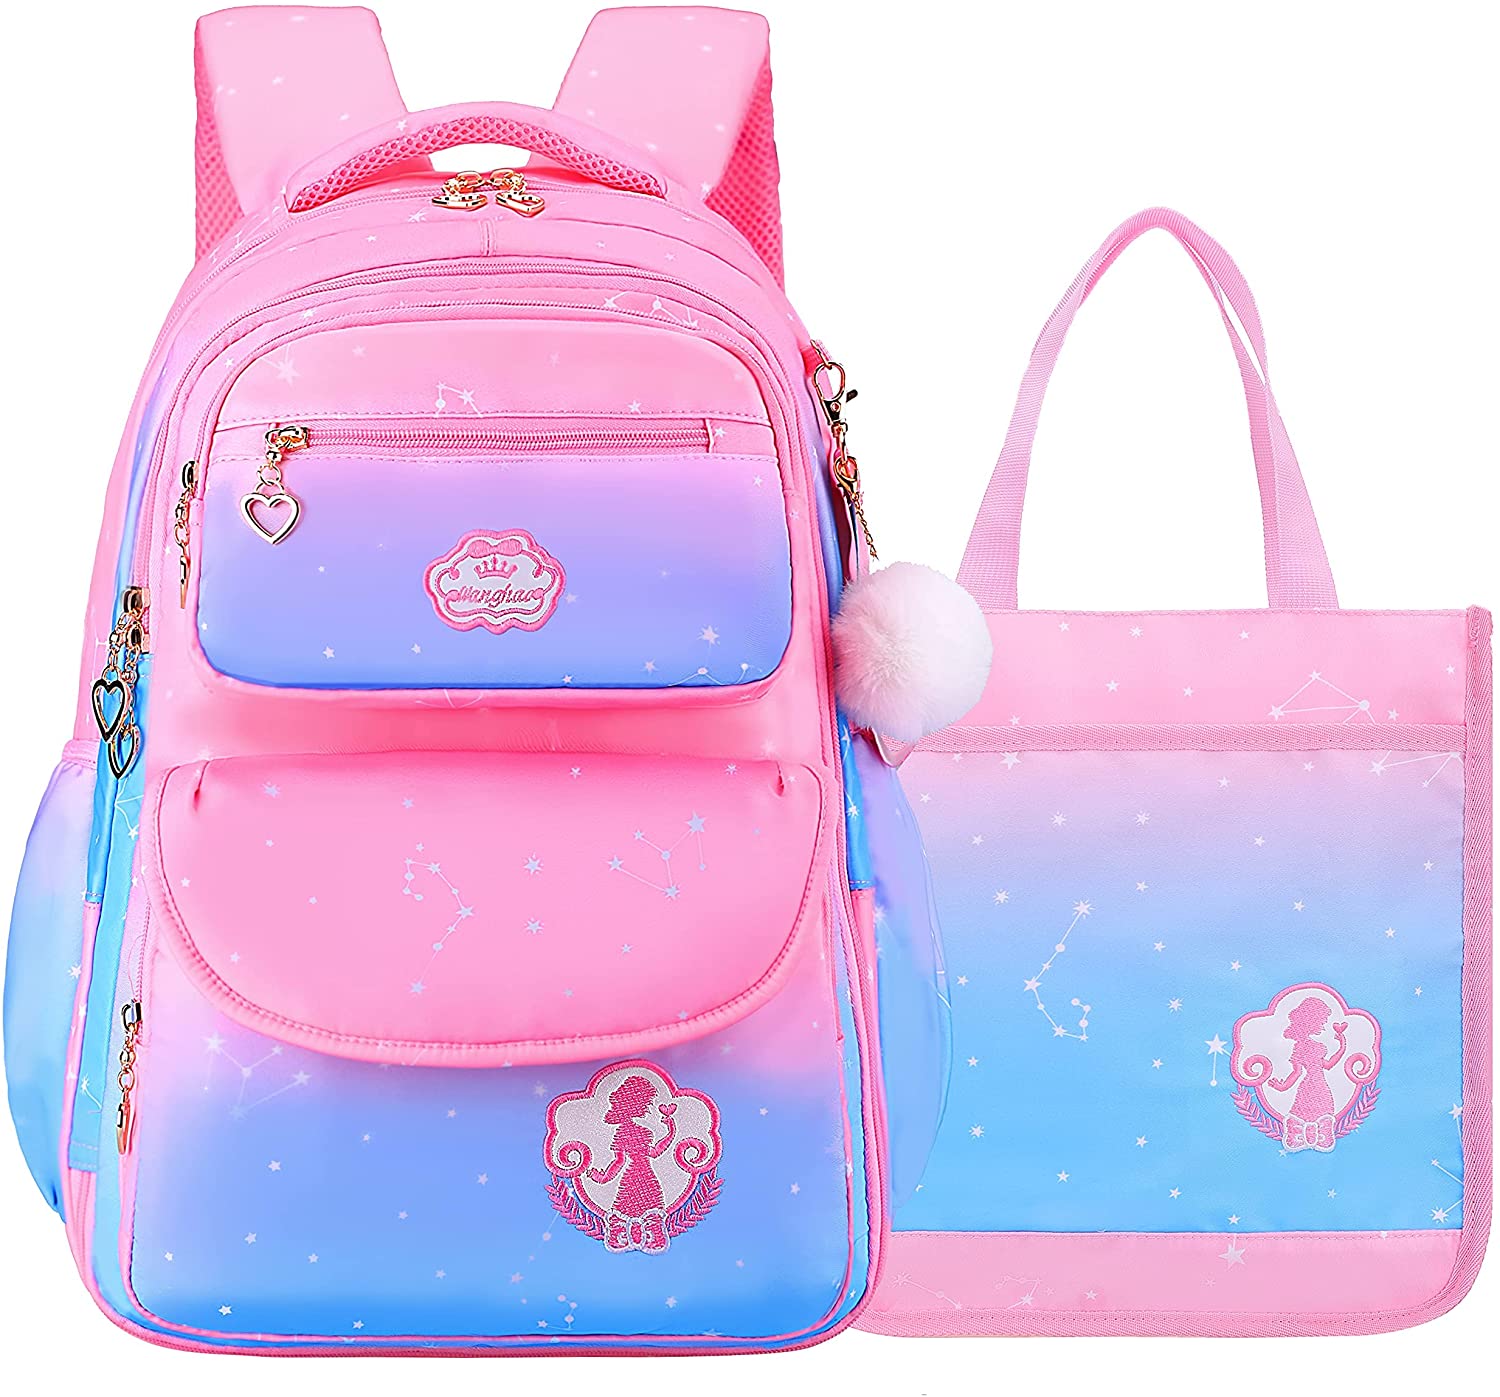 Backpack for Girls, Waterproof Kids Backpacks Princess School Bag Pink  Bookbags Cute Travel Daypack